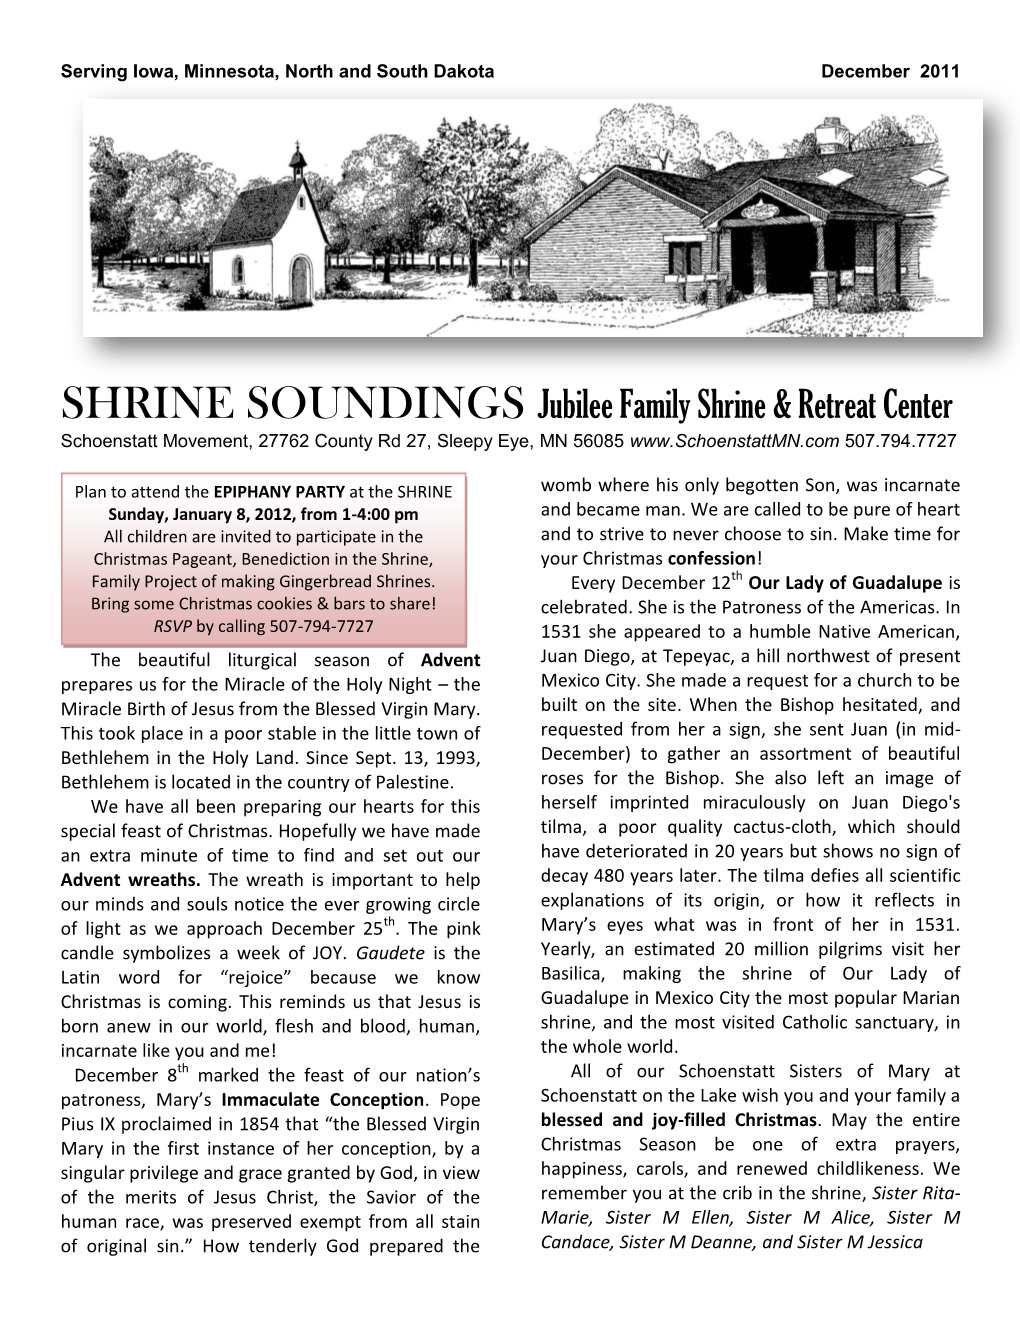 SHRINE SOUNDINGS Jubilee Family Shrine & Retreat Center